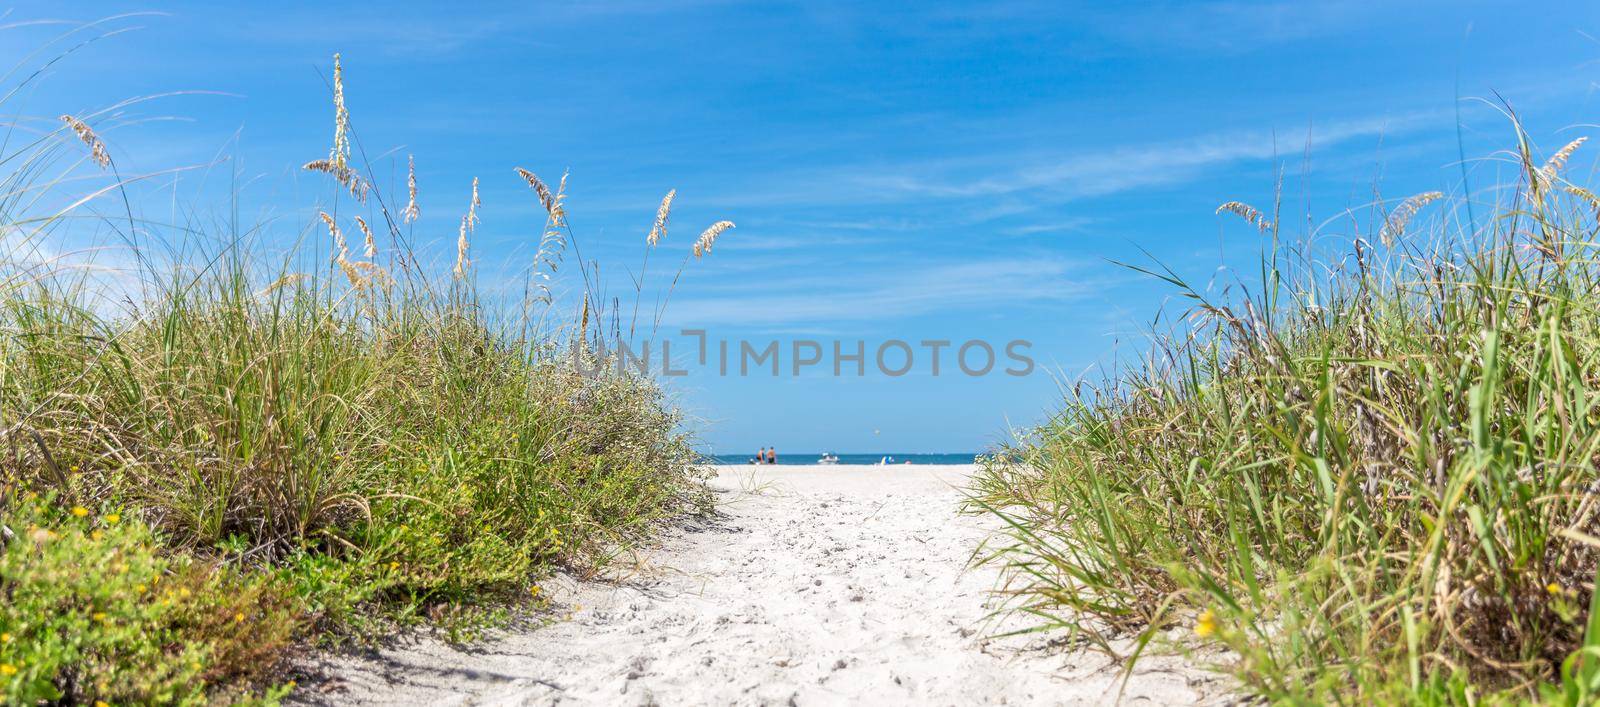 sunny beach with sand dunes and blue sky by Mariakray